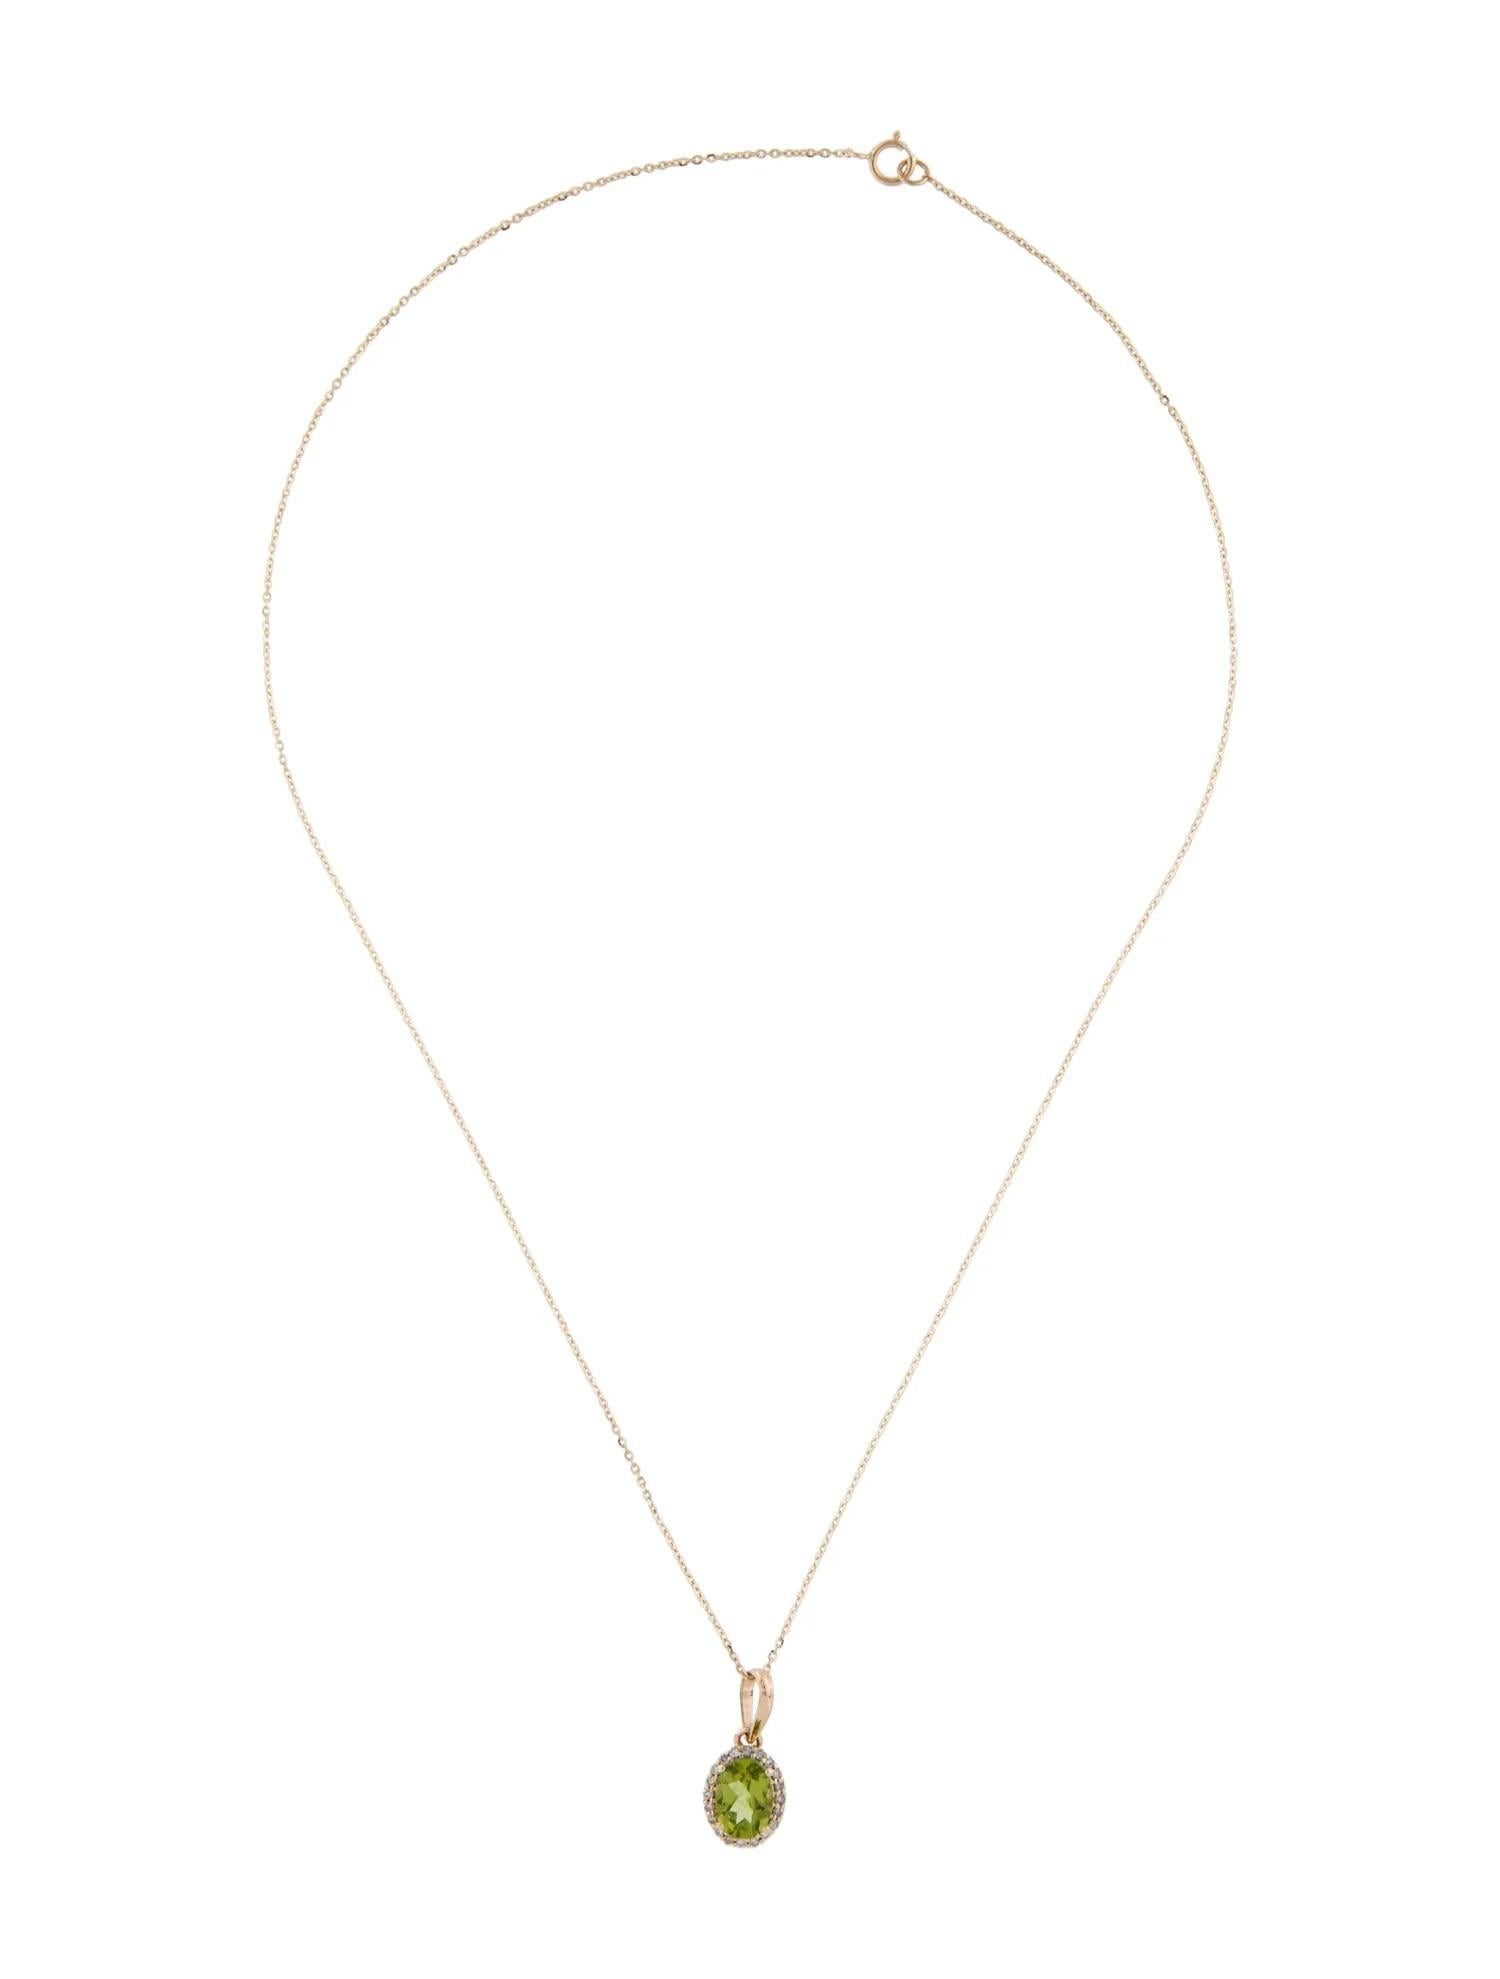 Artist 14K Yellow Gold Peridot & Diamond Pendant Necklace - 1.29 Carat Oval Peridot For Sale